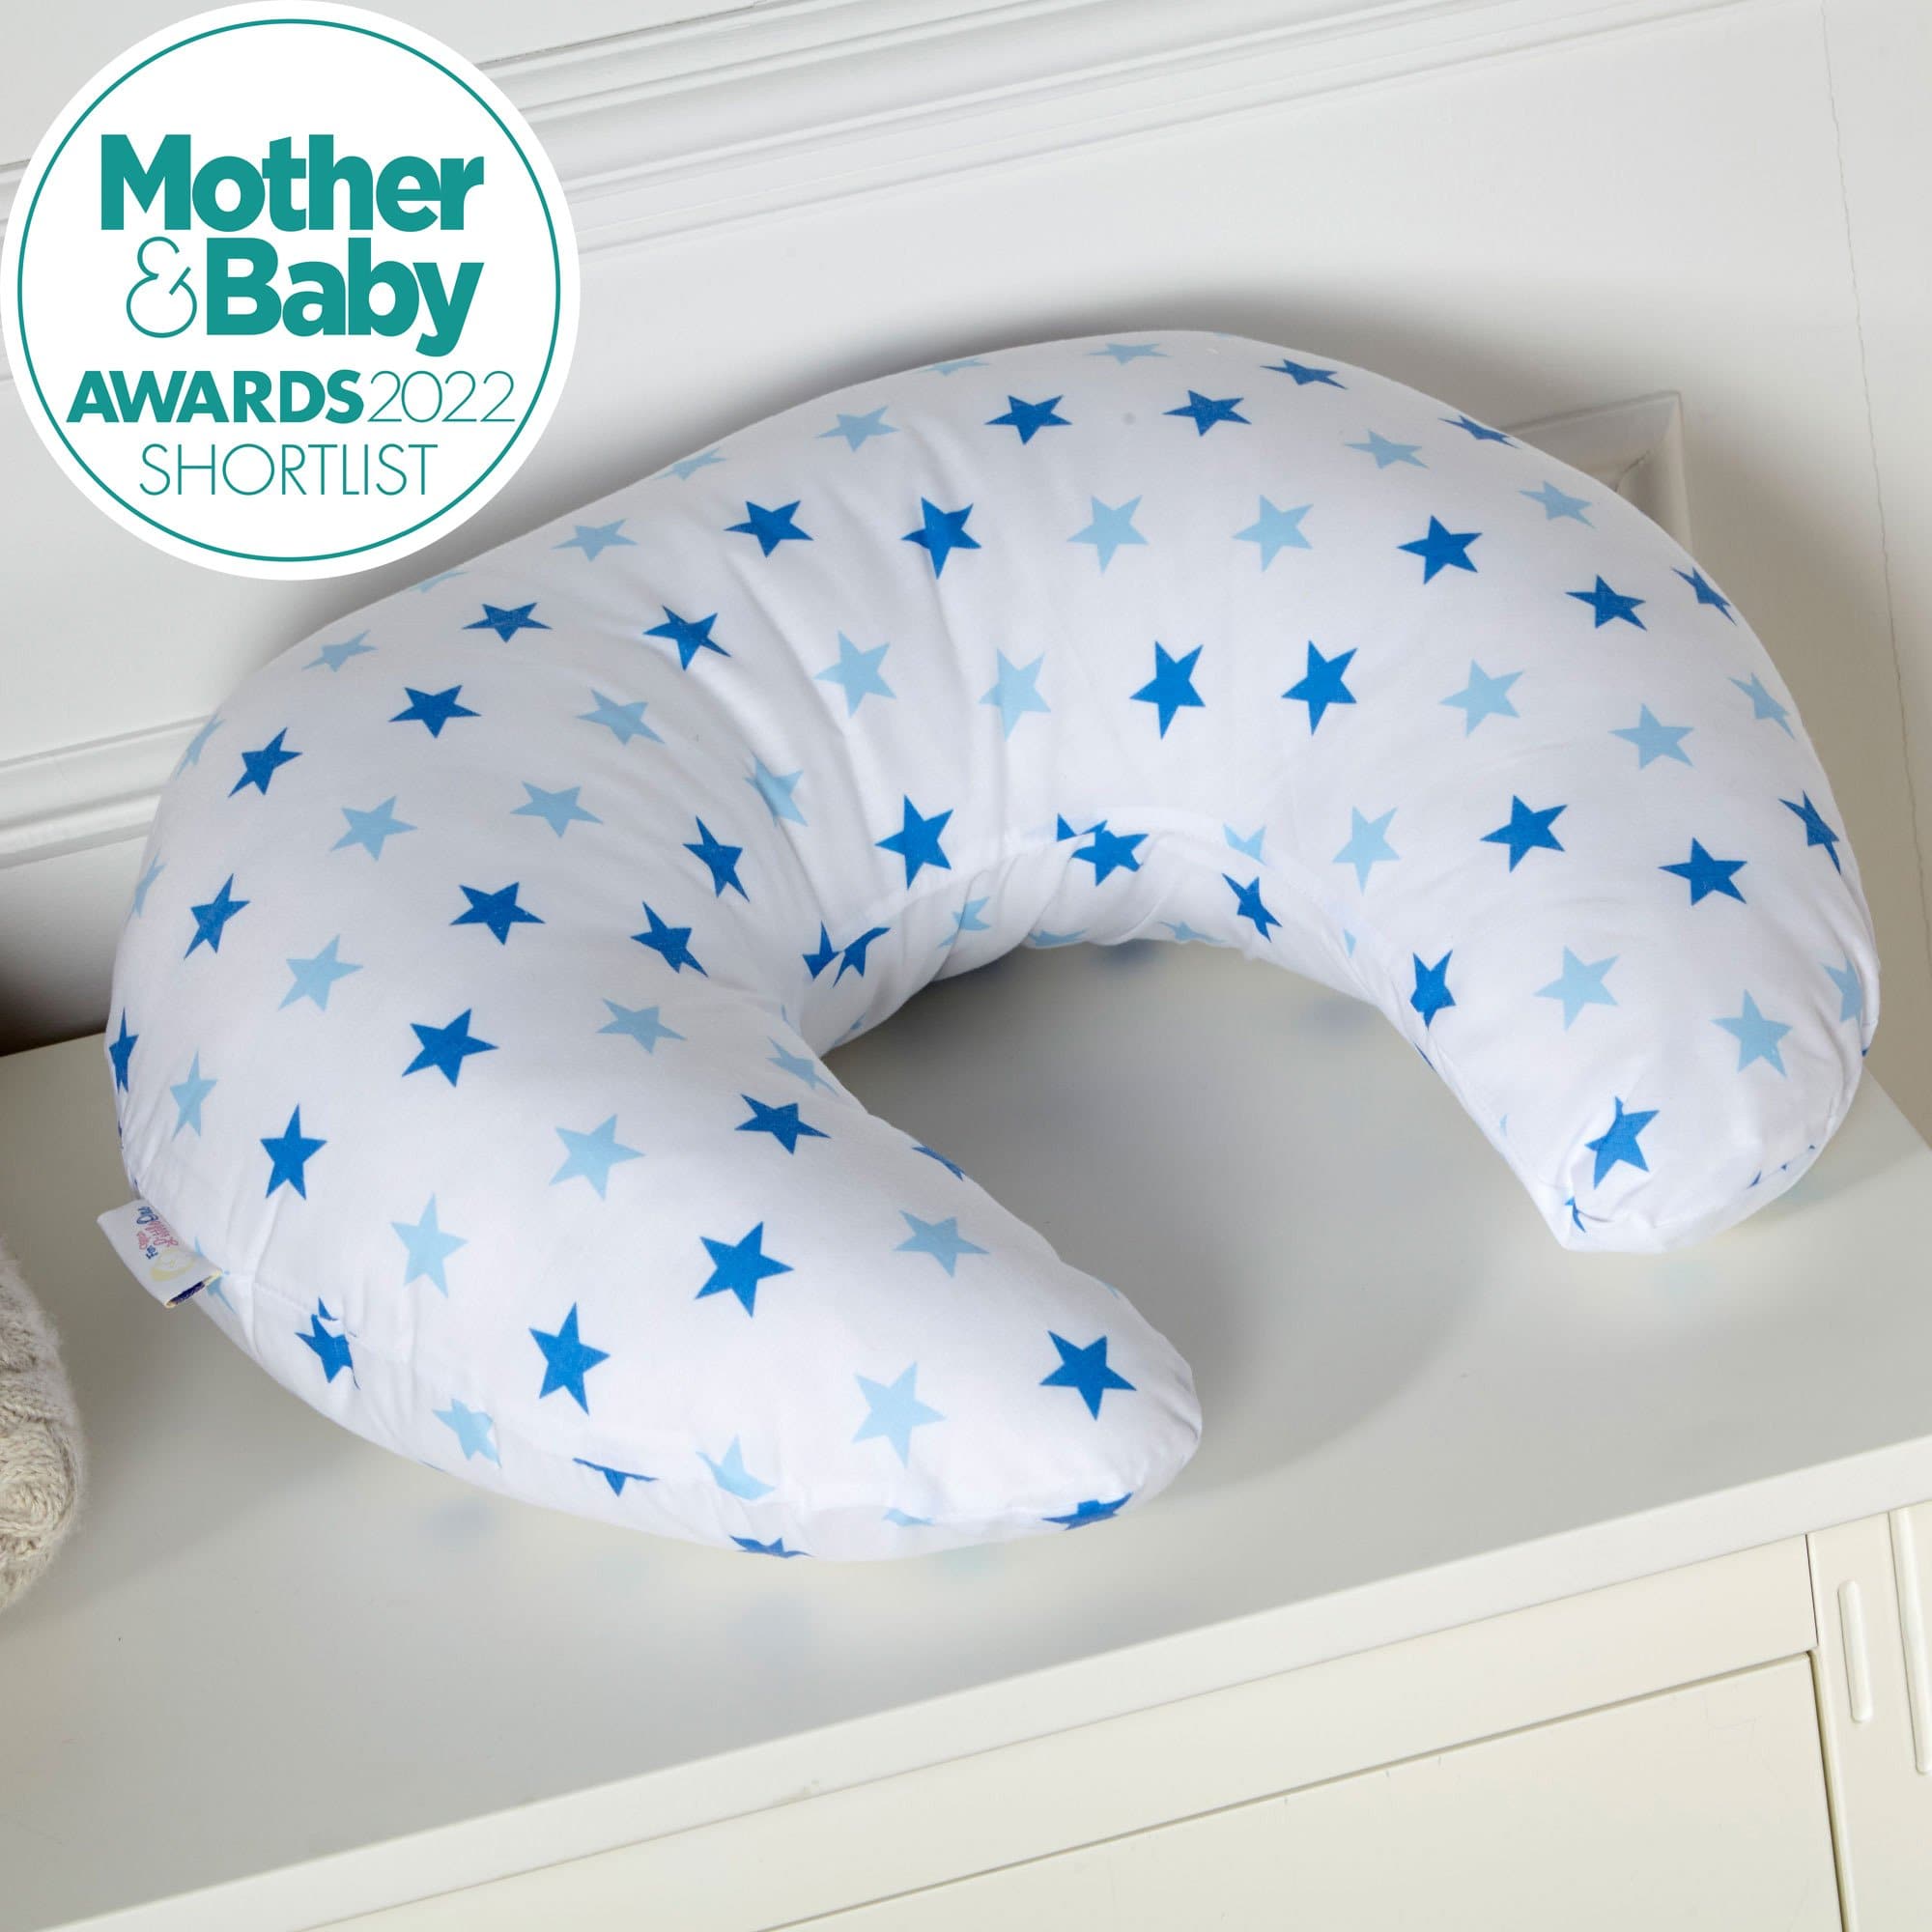 Breast Feeding Maternity Nursing Pillow - Little Star Blue - For Your Little One